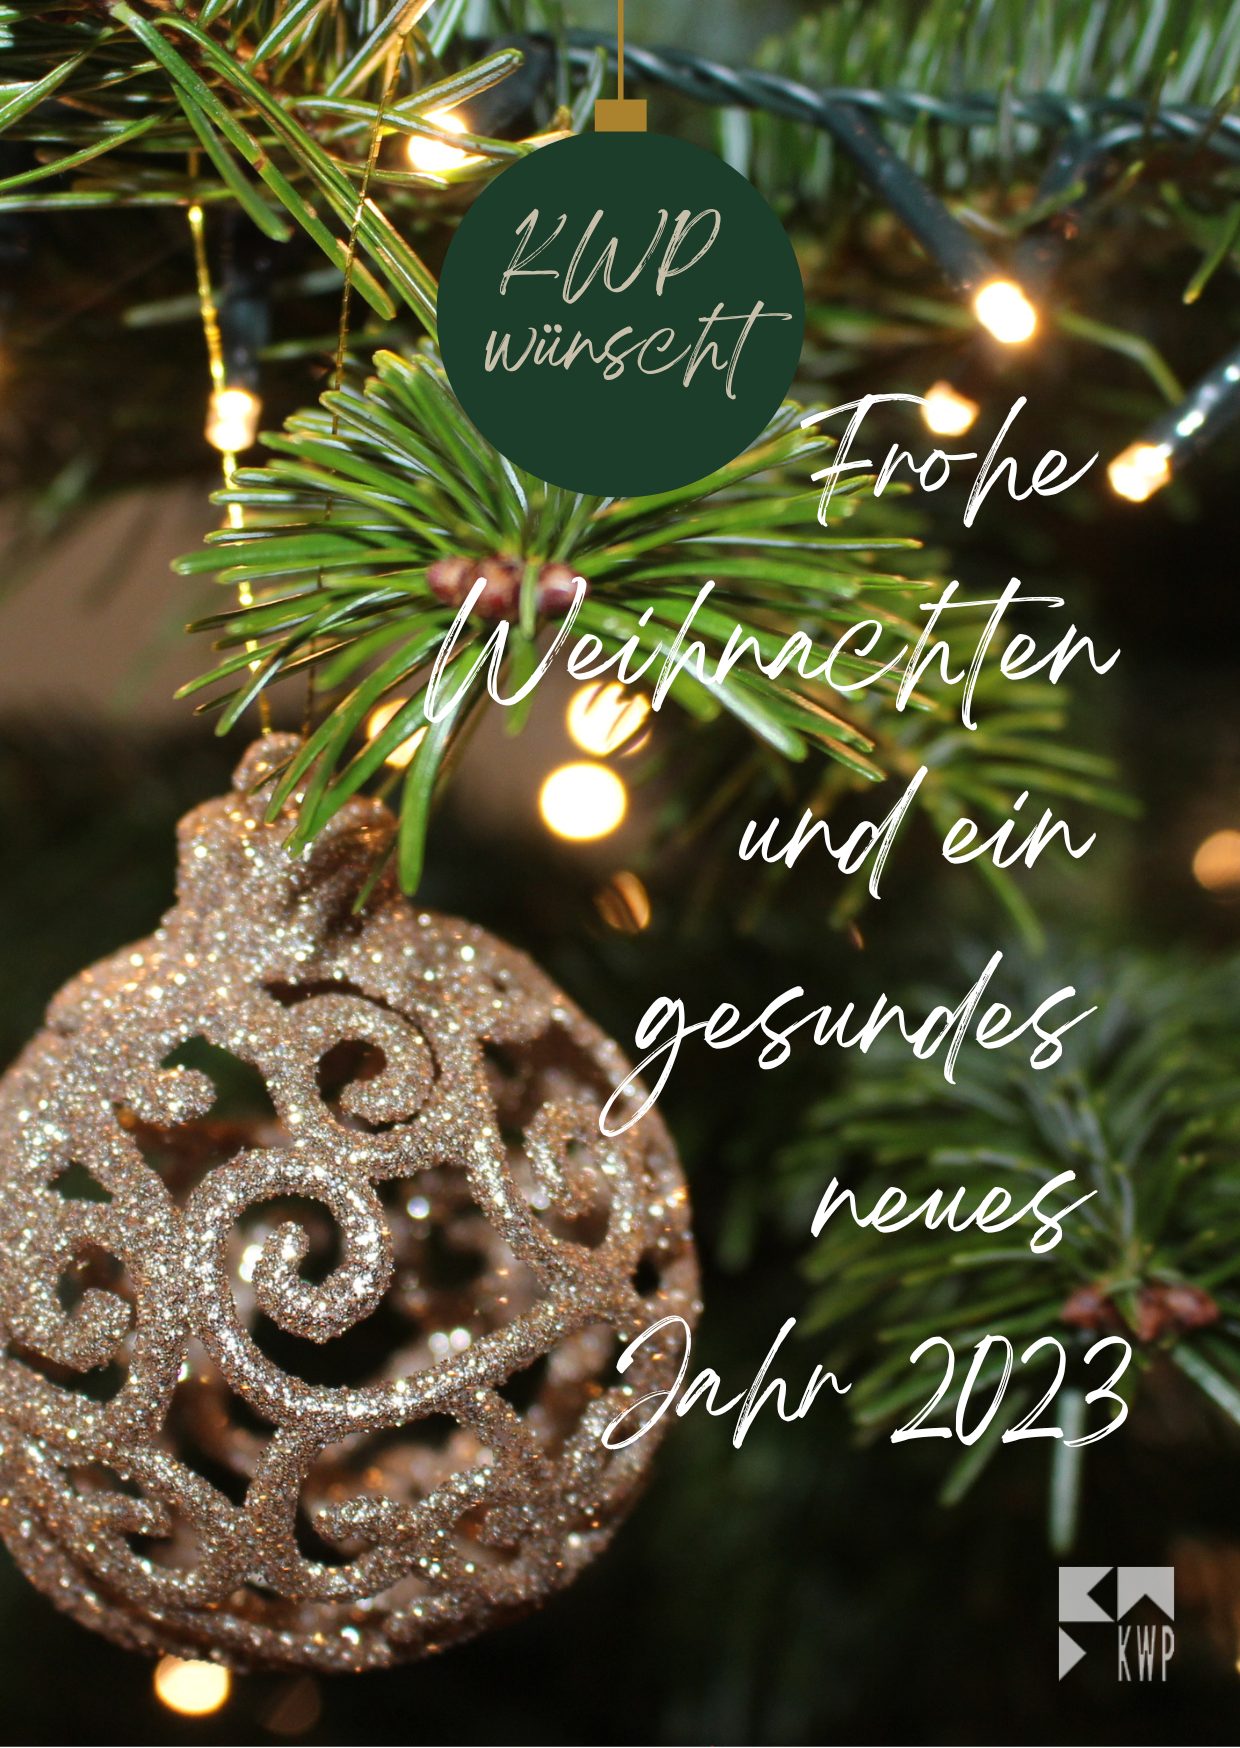 KWP wünscht frohe Weihnachten 2022 - Postkartenformat